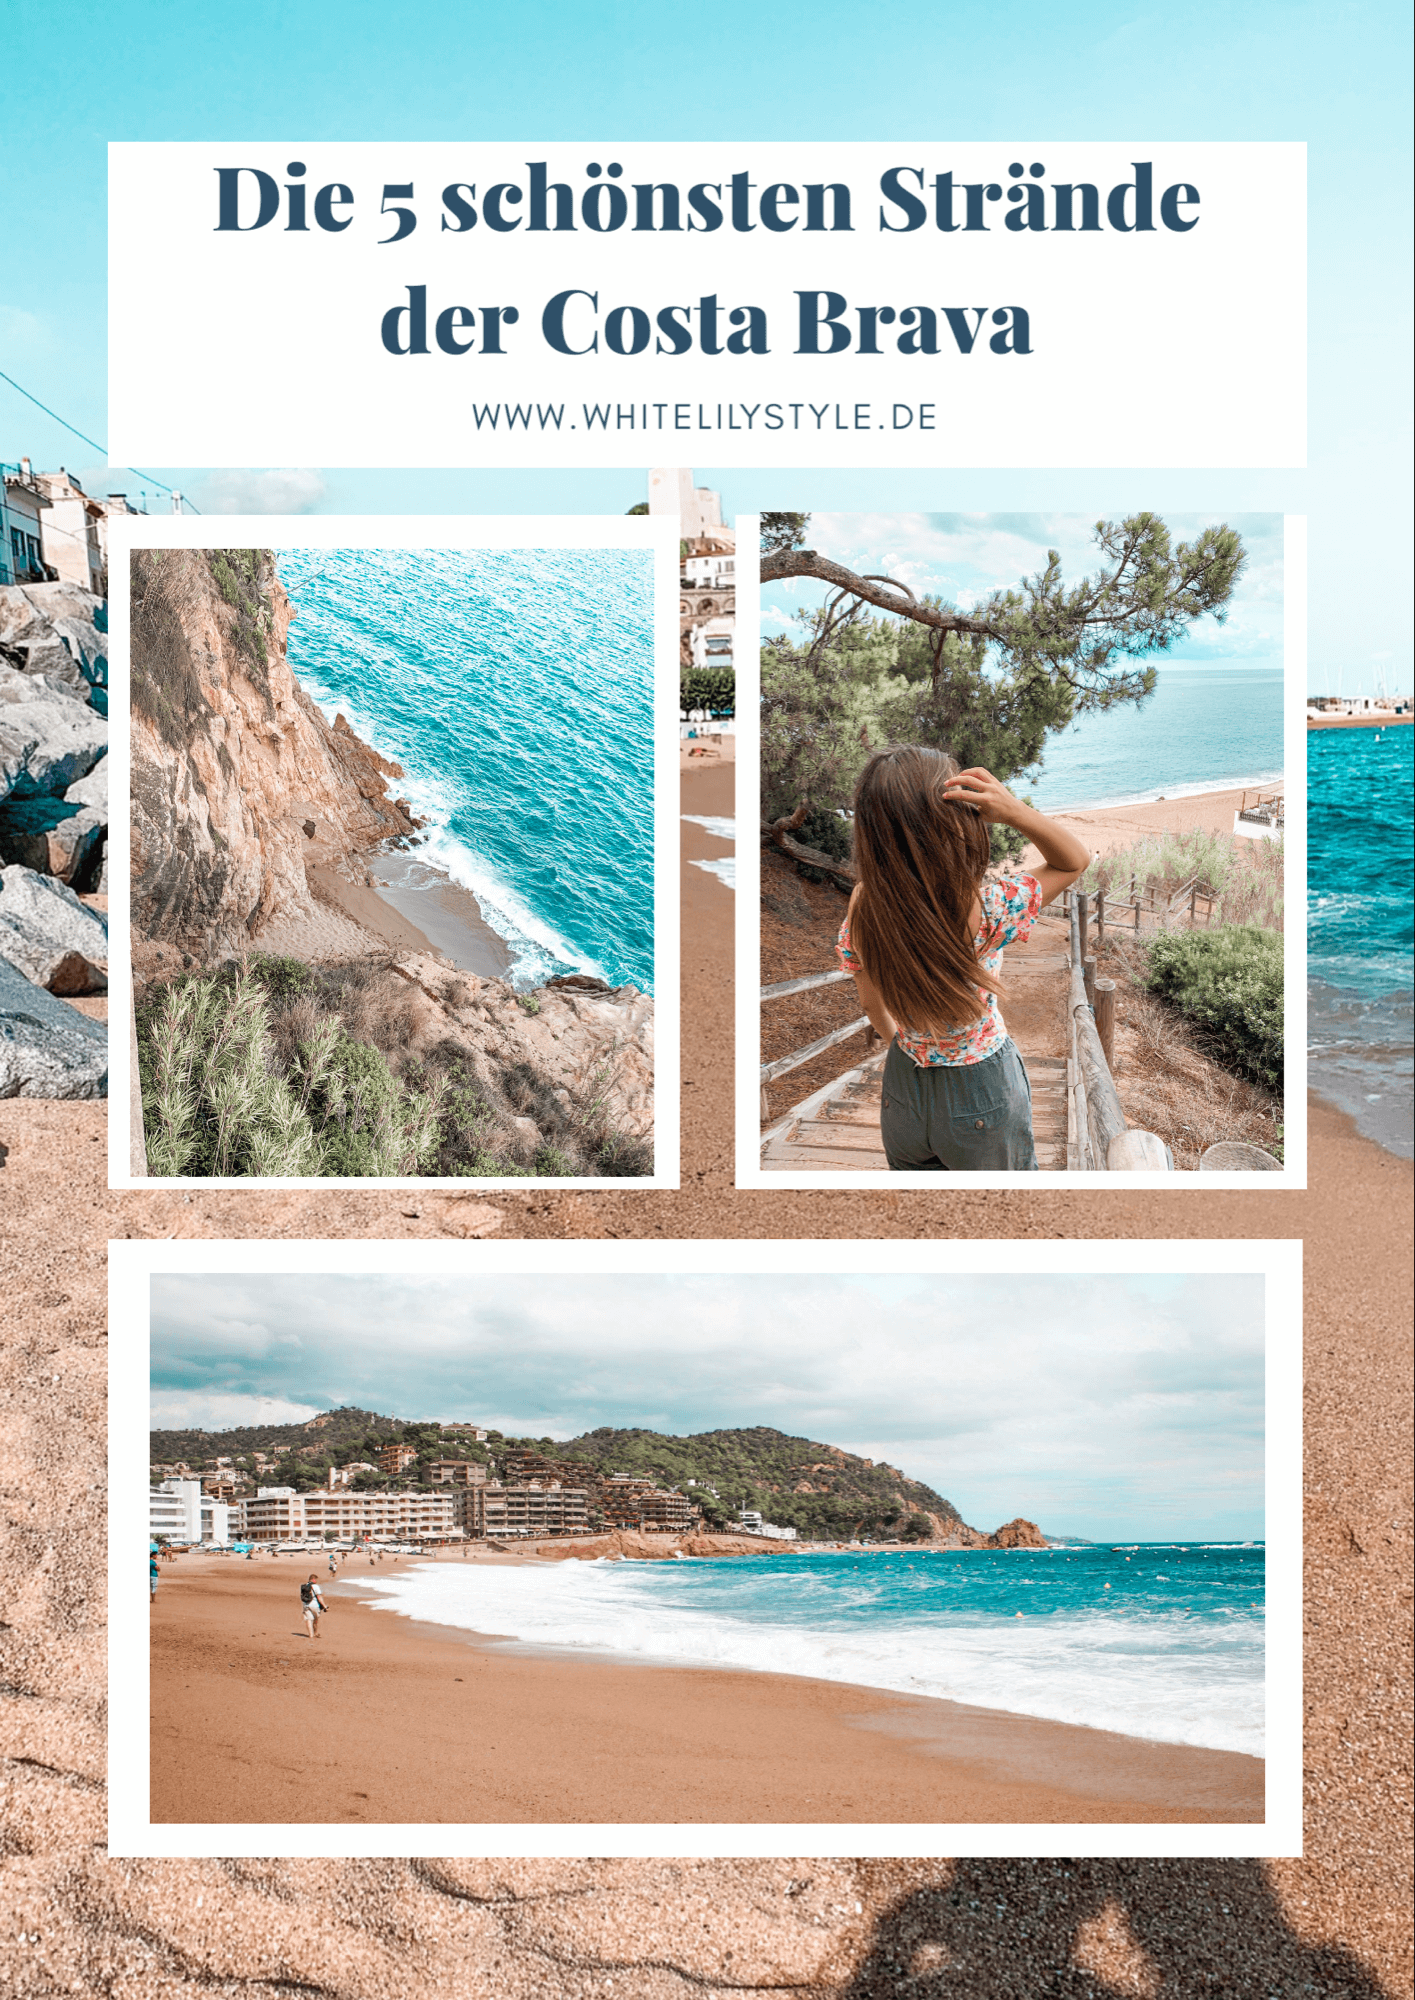 Costa Brava – die 5 schönsten Strände Costa Brava